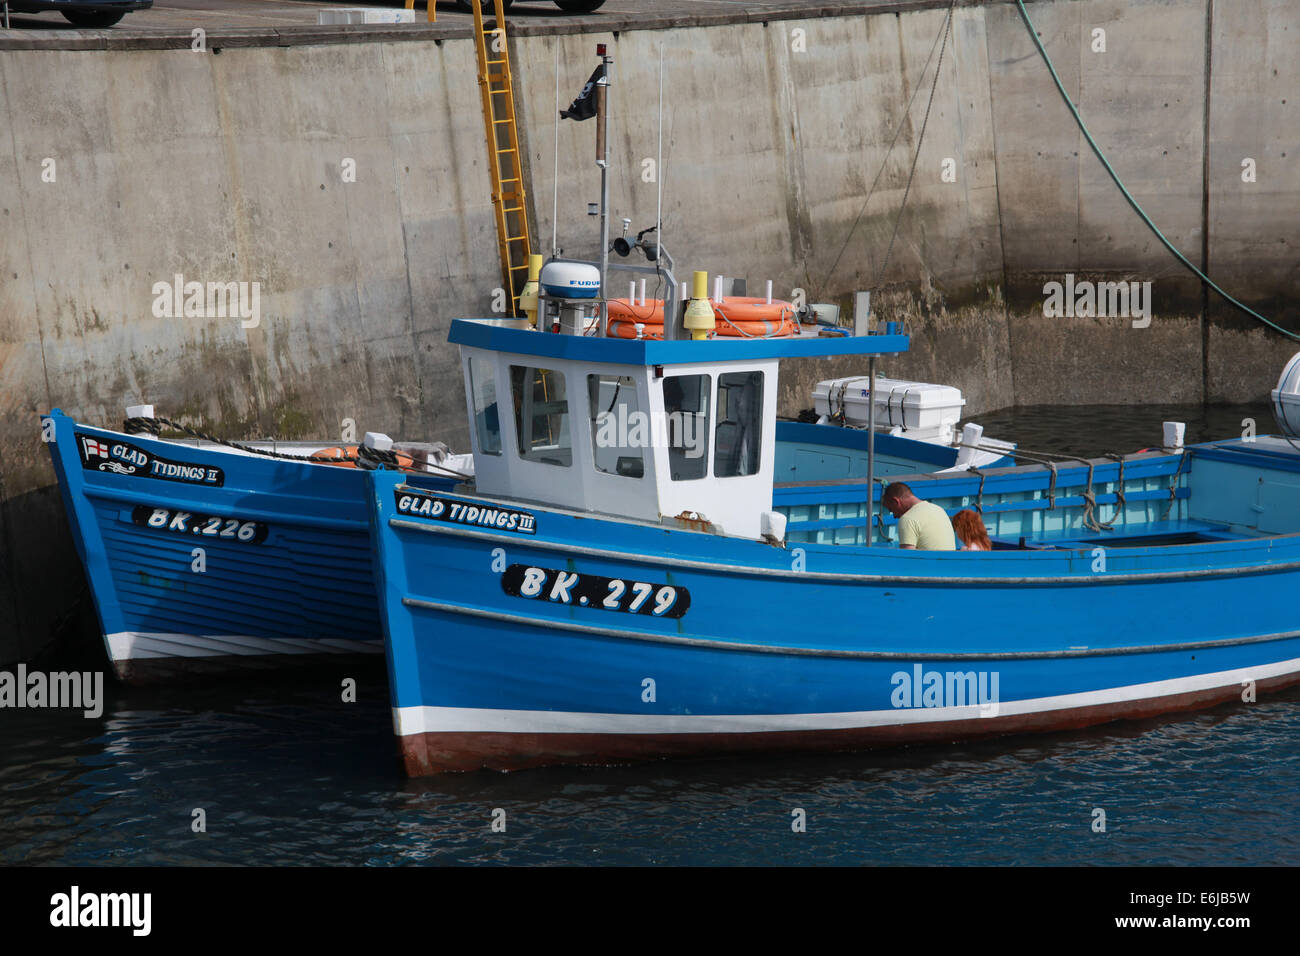 BK279 bateau de pêche bleu au port de Seahouses , Gent Tidings - Northumberland, ne Angleterre, Grande-Bretagne, Royaume-Uni Banque D'Images